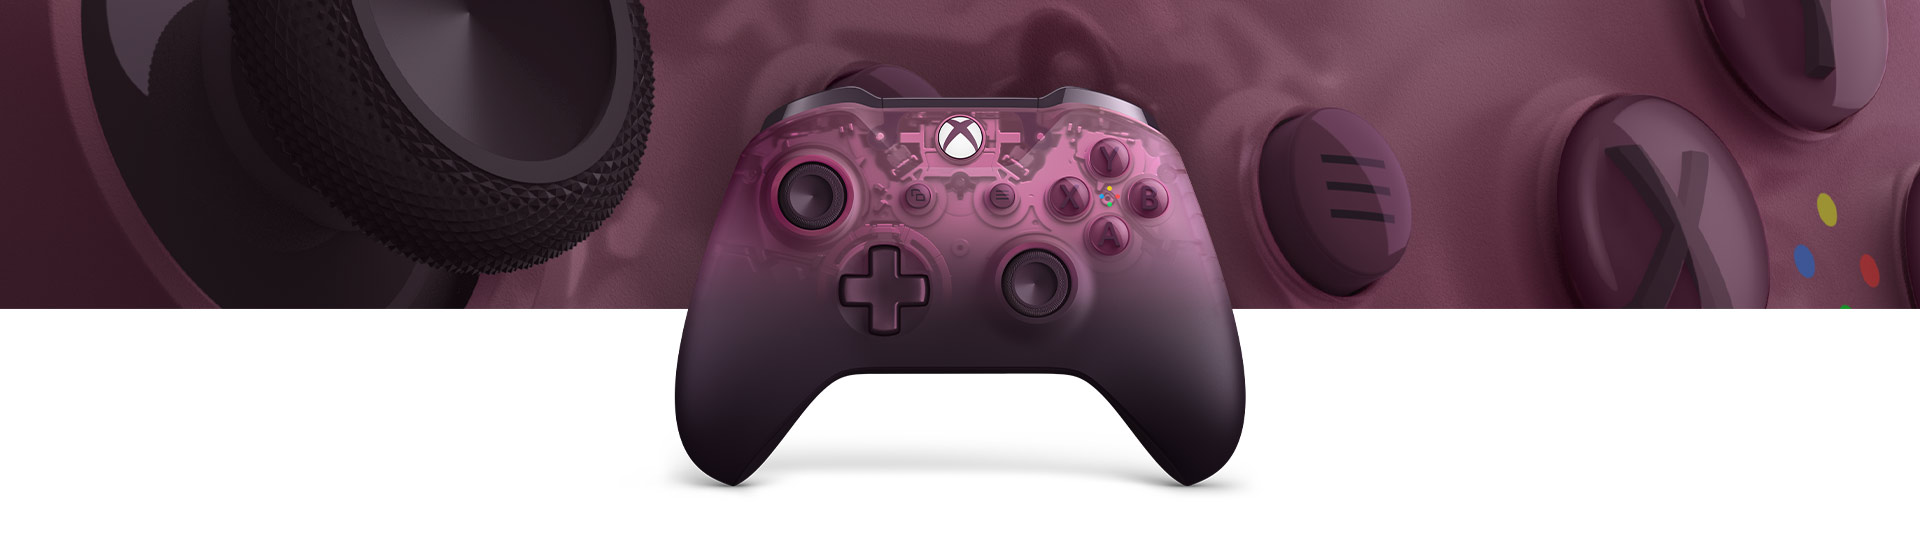 Xbox Wireless Controller – Phantom Magenta Special Edition mit einer Nahaufnahme der Controller-Oberflächenstruktur